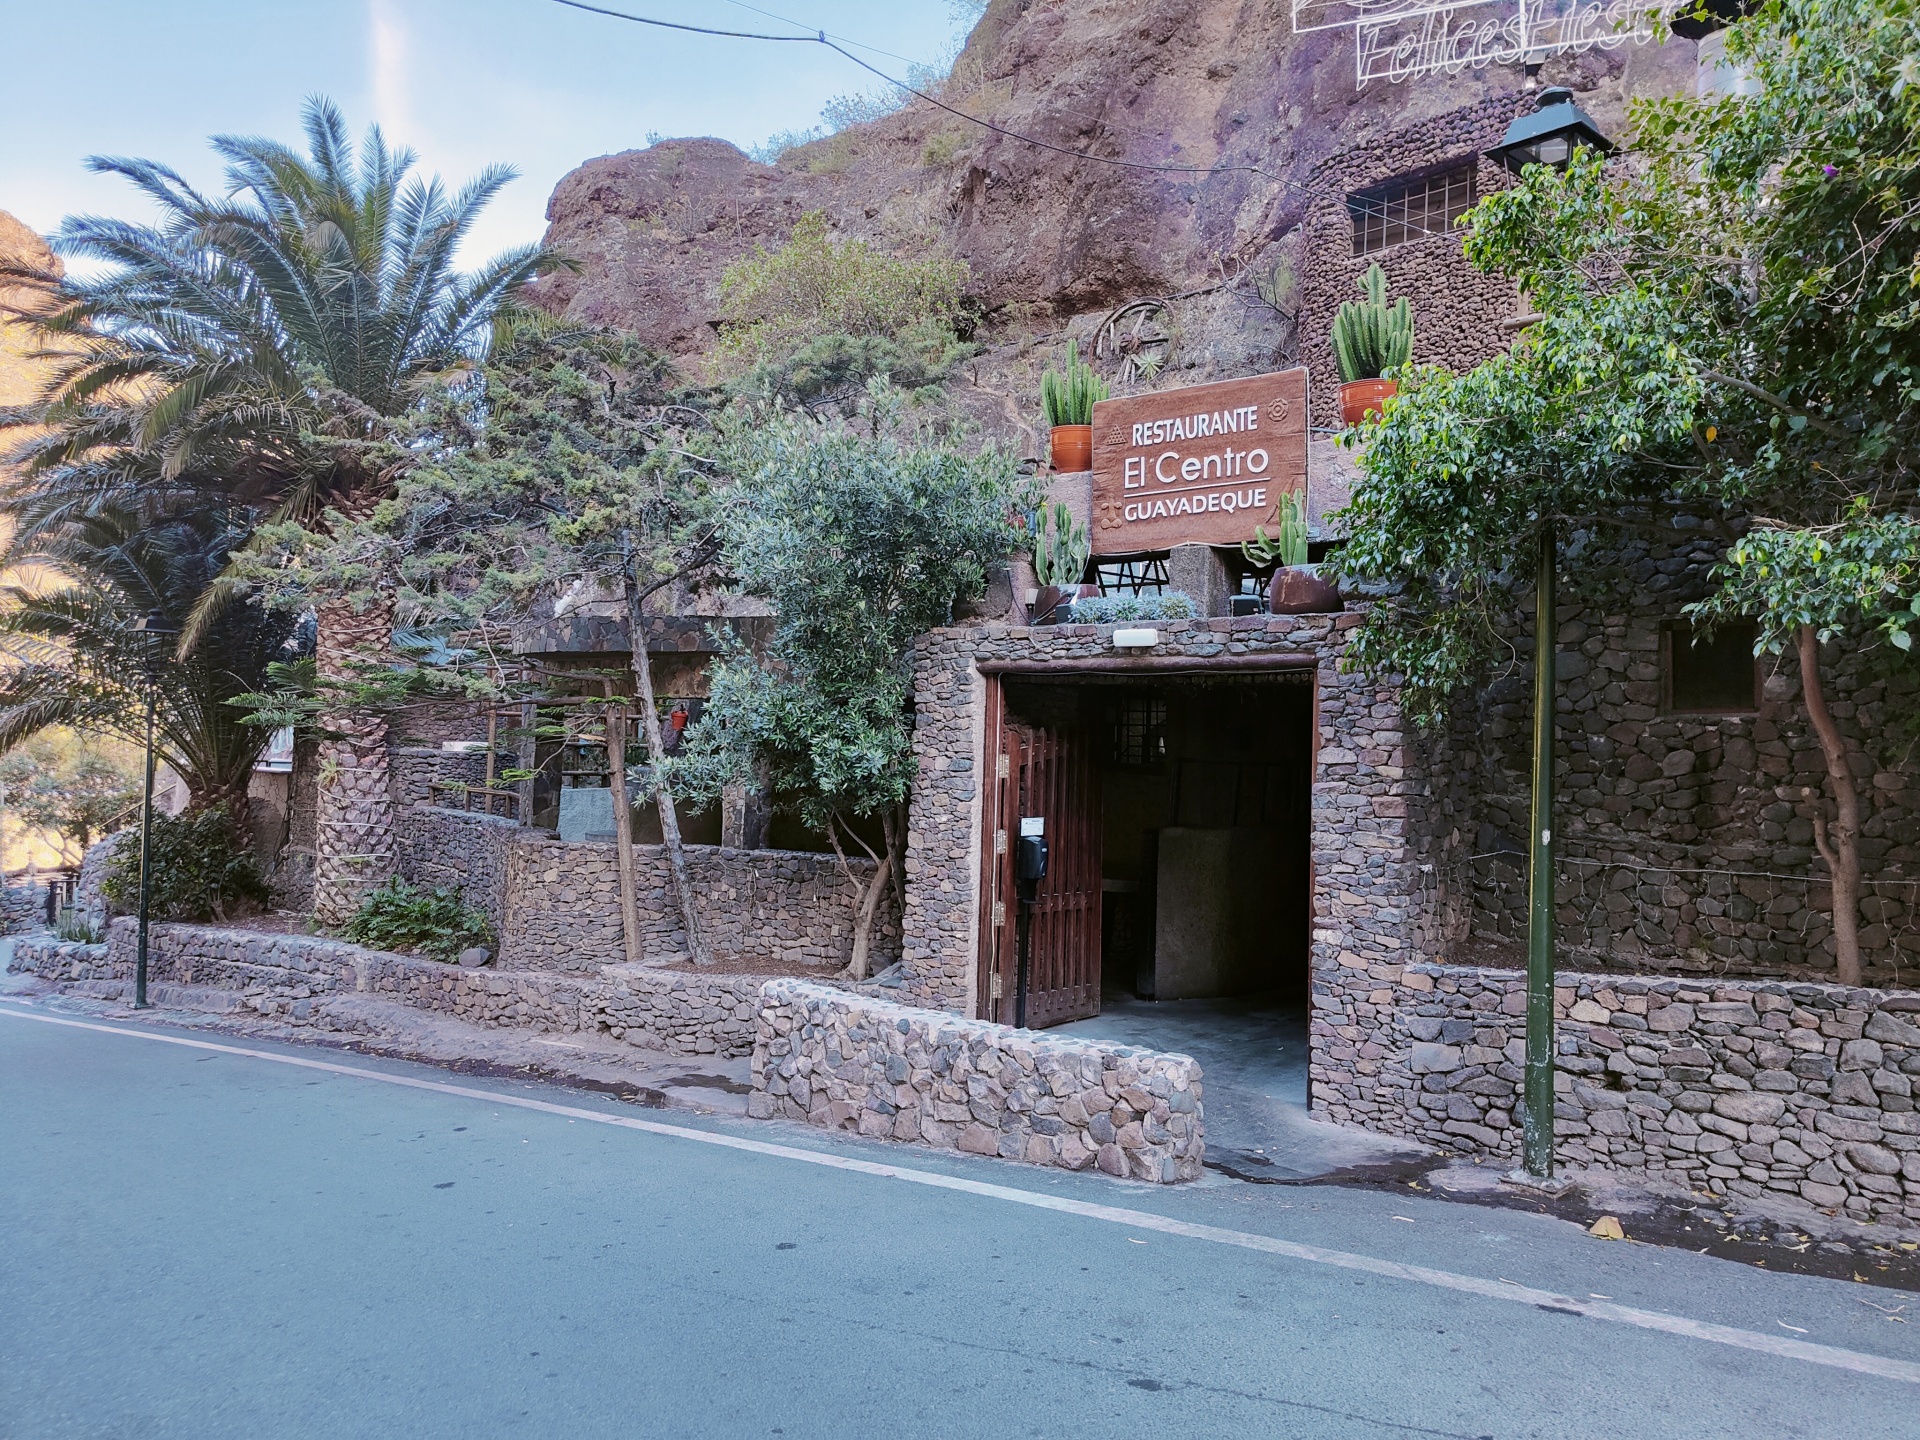 10 Gute und schöne Restaurants auf Gran Canaria